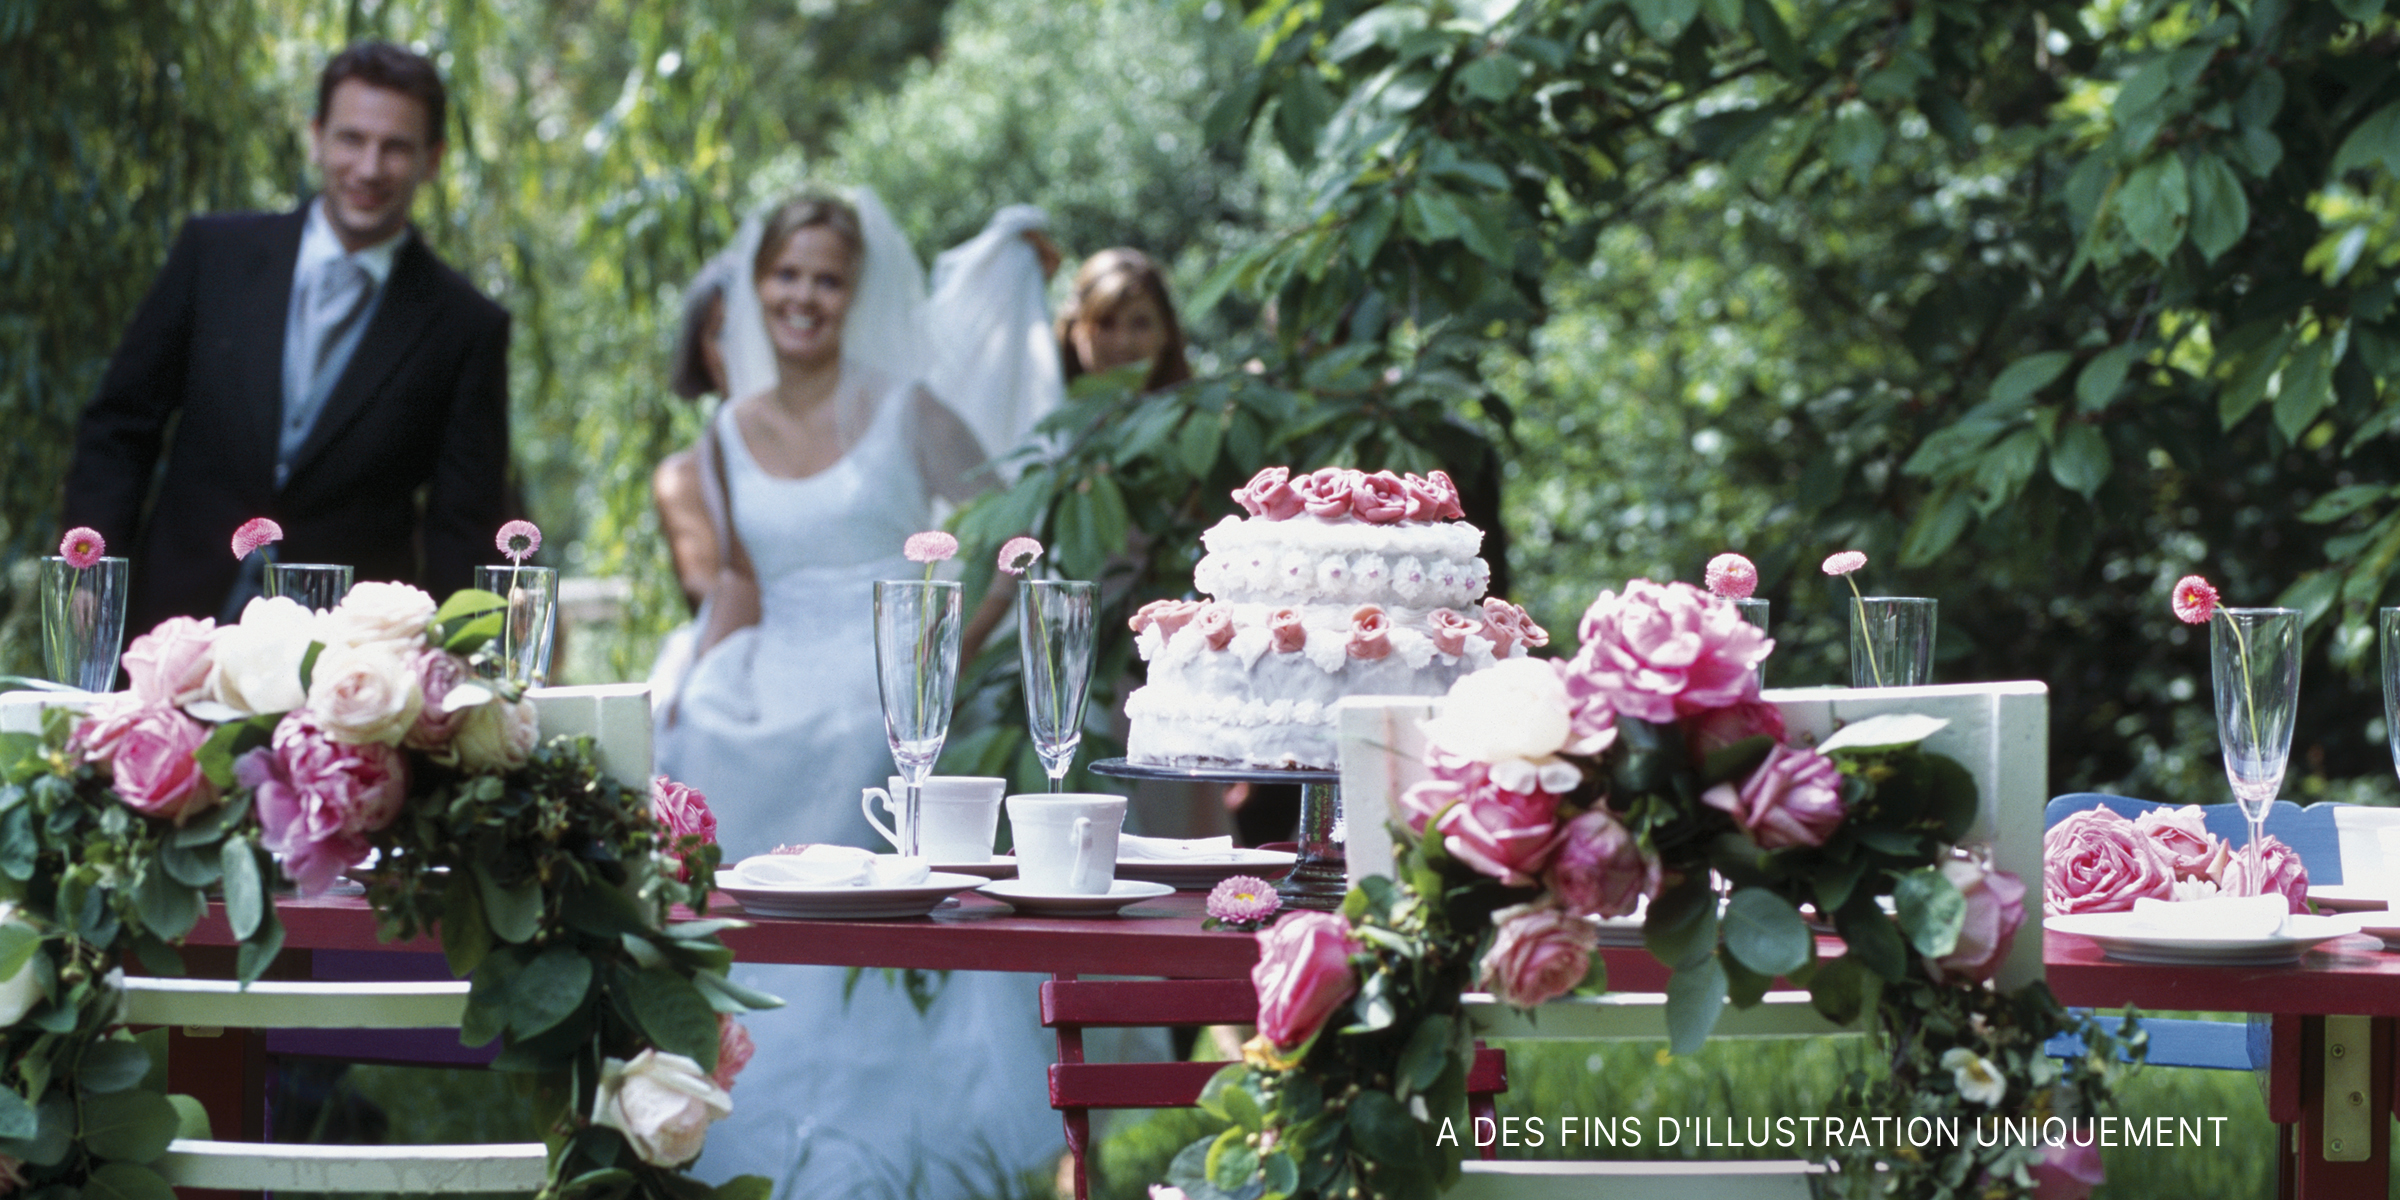 Une mariée et un marié s'approchent pour couper le gâteau lors d'une réception de mariage | Source : Getty Images